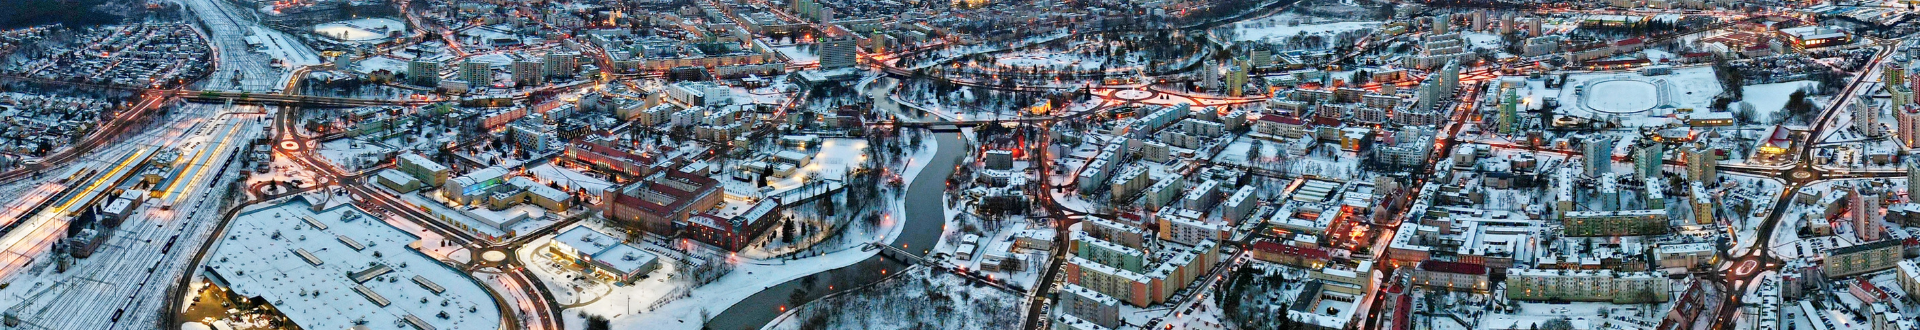 zdjęcie miasta w zimowej scenerii robione z dużej wysokości (z lotu ptaka)